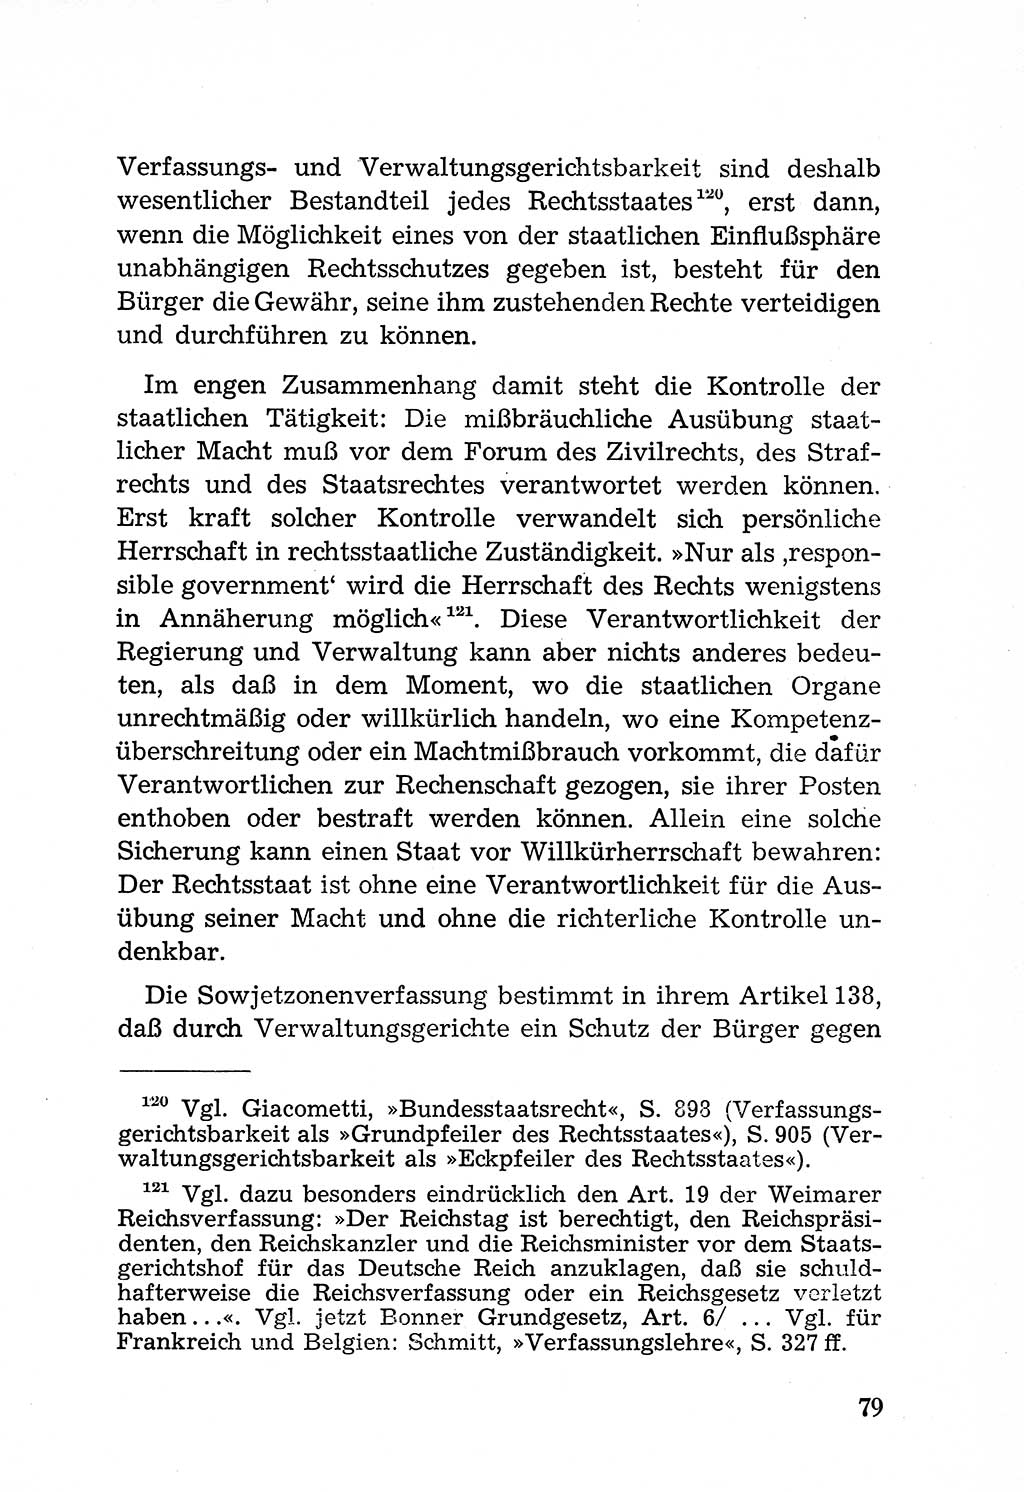 Rechtsstaat in zweierlei Hinsicht, Untersuchungsausschuß freiheitlicher Juristen (UfJ) [Bundesrepublik Deutschland (BRD)] 1956, Seite 79 (R.-St. UfJ BRD 1956, S. 79)